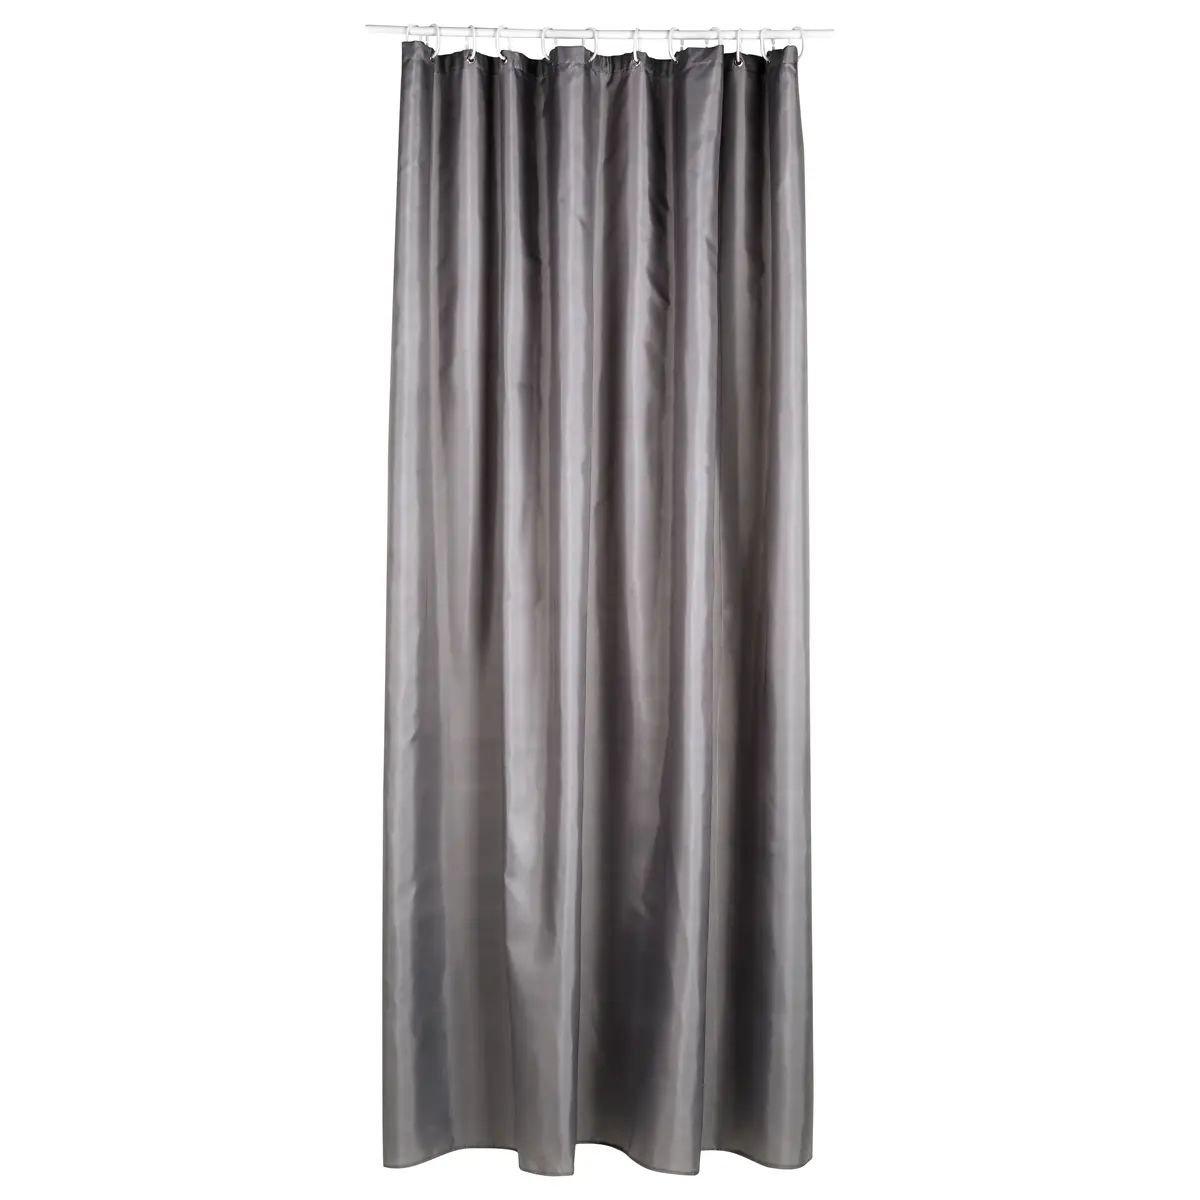 5five Duschvorhang – Polyester – Grau  